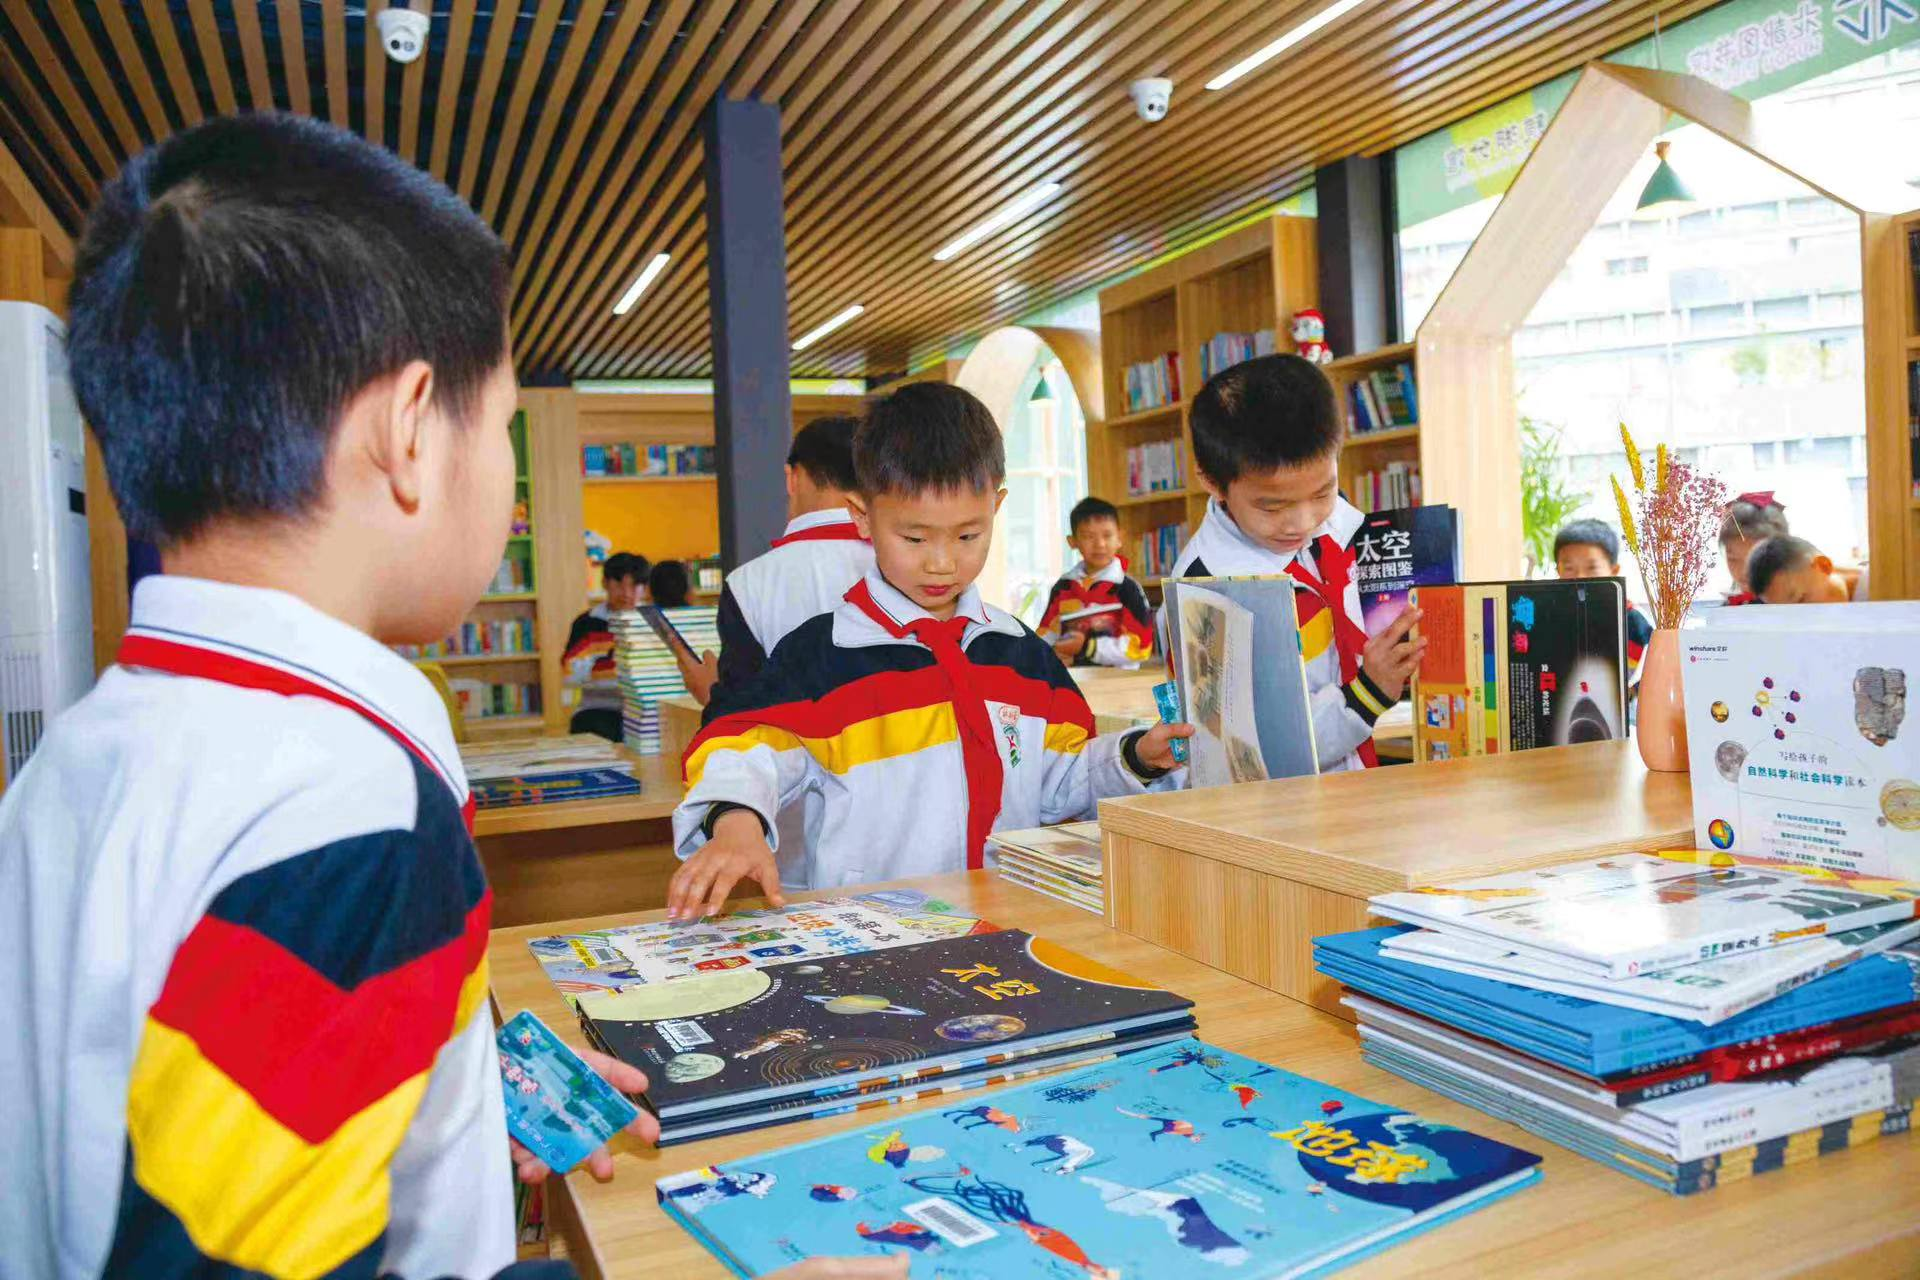 广州少年儿童图书馆联合花都图书馆在花都区新雅街镜湖学校,自由人